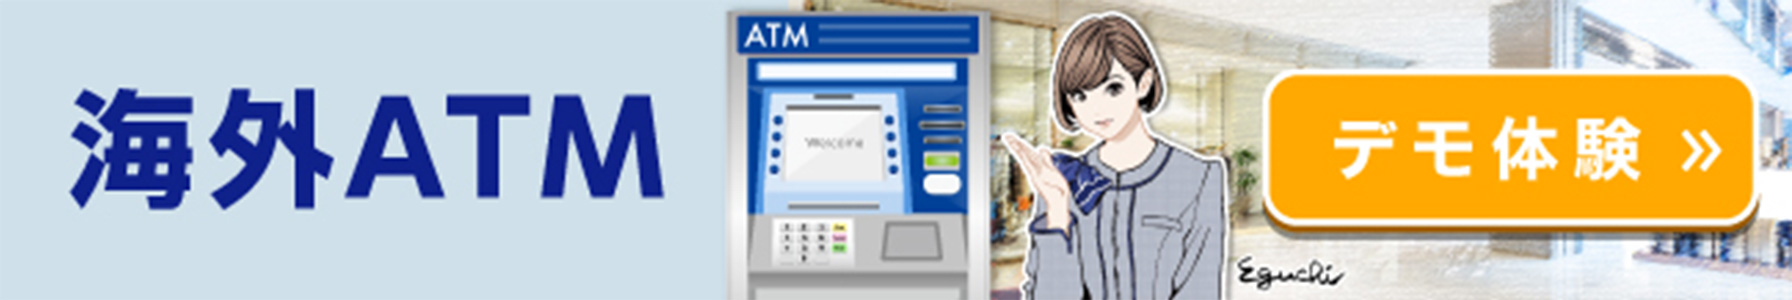 海外ATM デモ体験